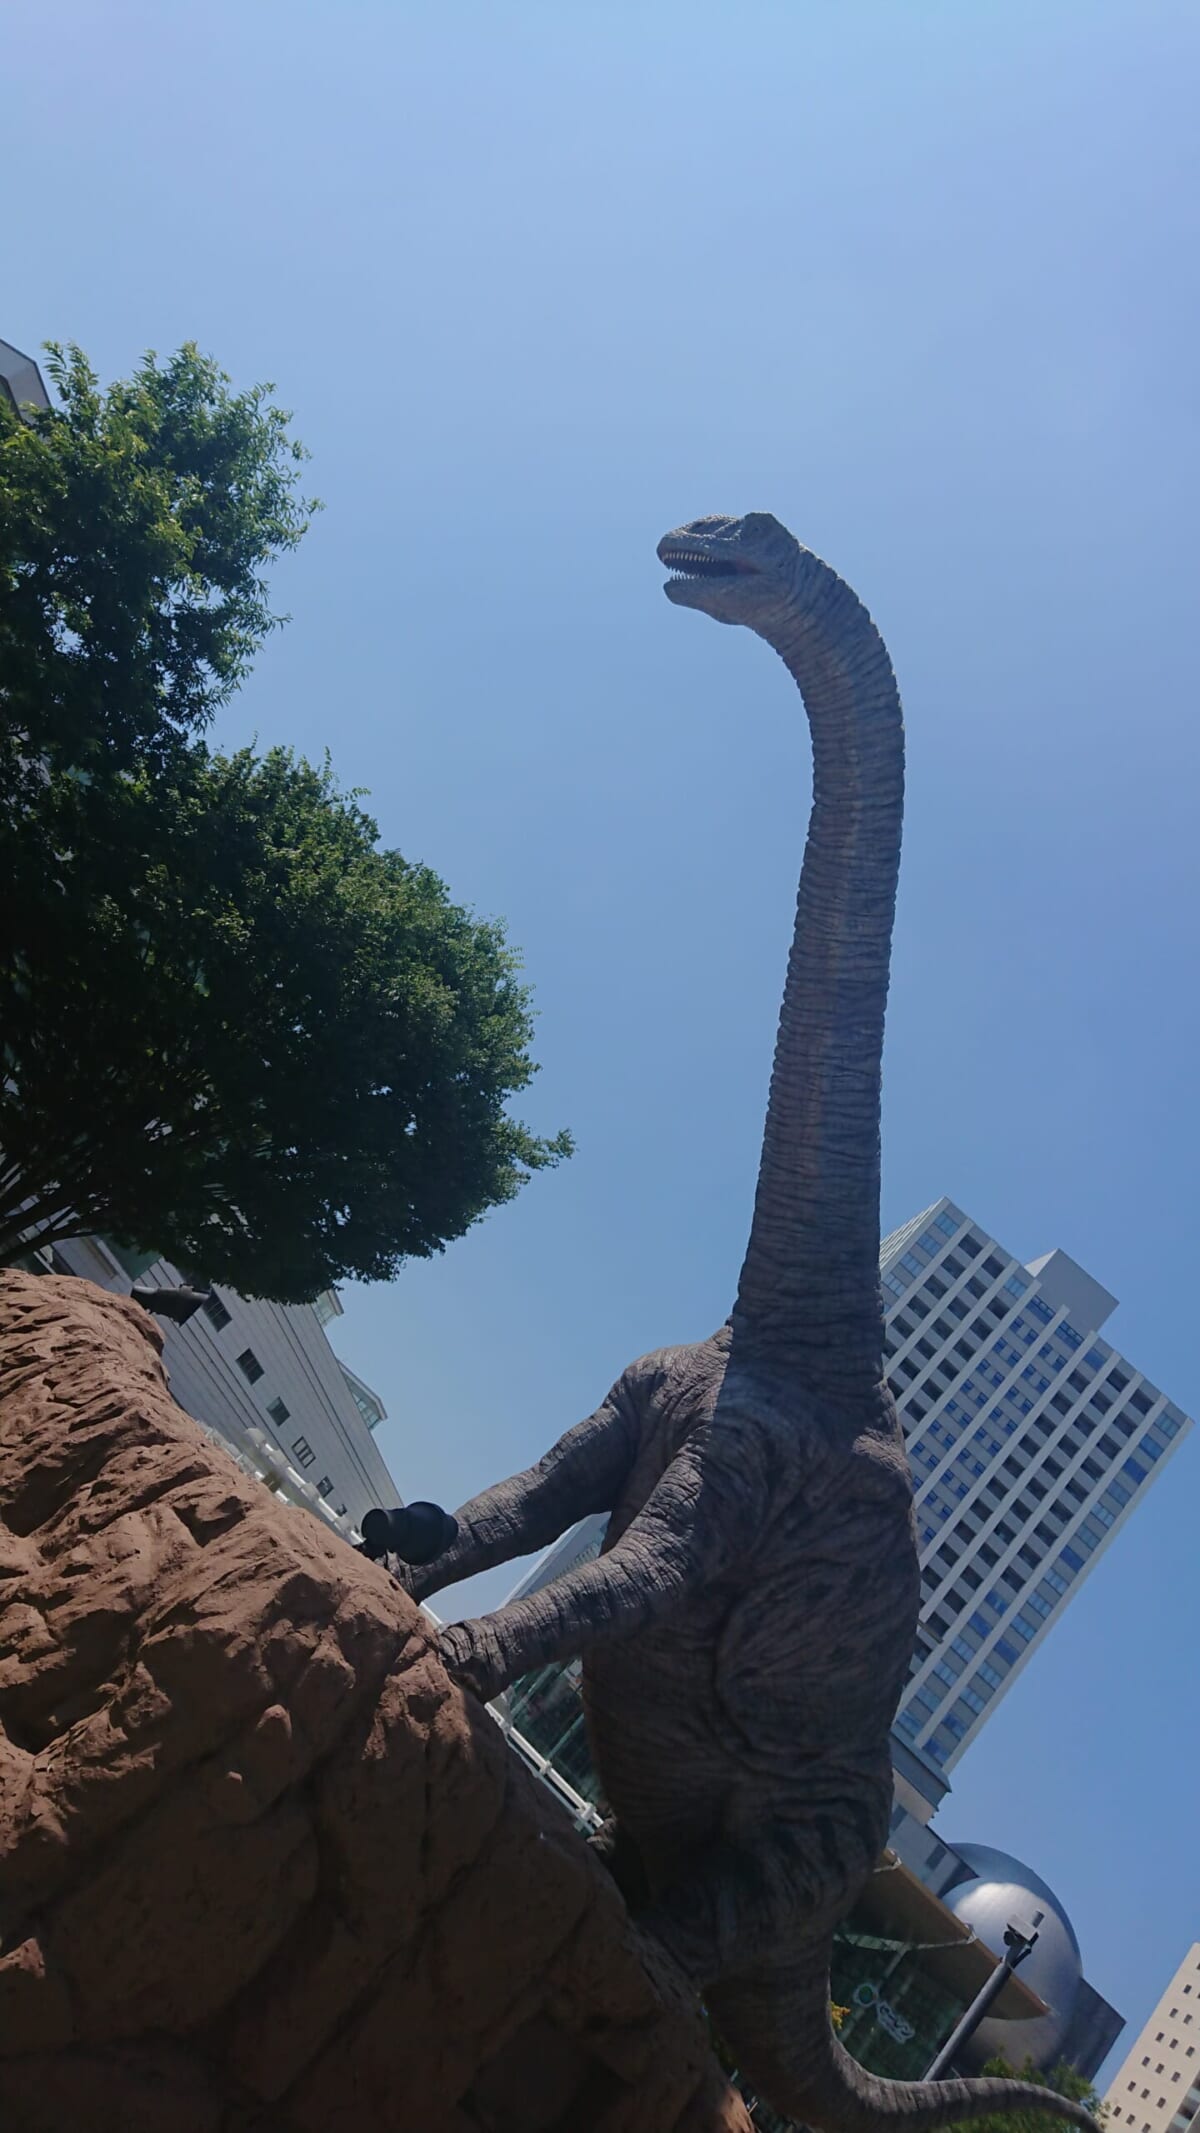 福井駅前恐竜広場にて。「フクイティタン・ニッポネンシスにお迎えされて、一気にテンションが上がった。最高でした！」